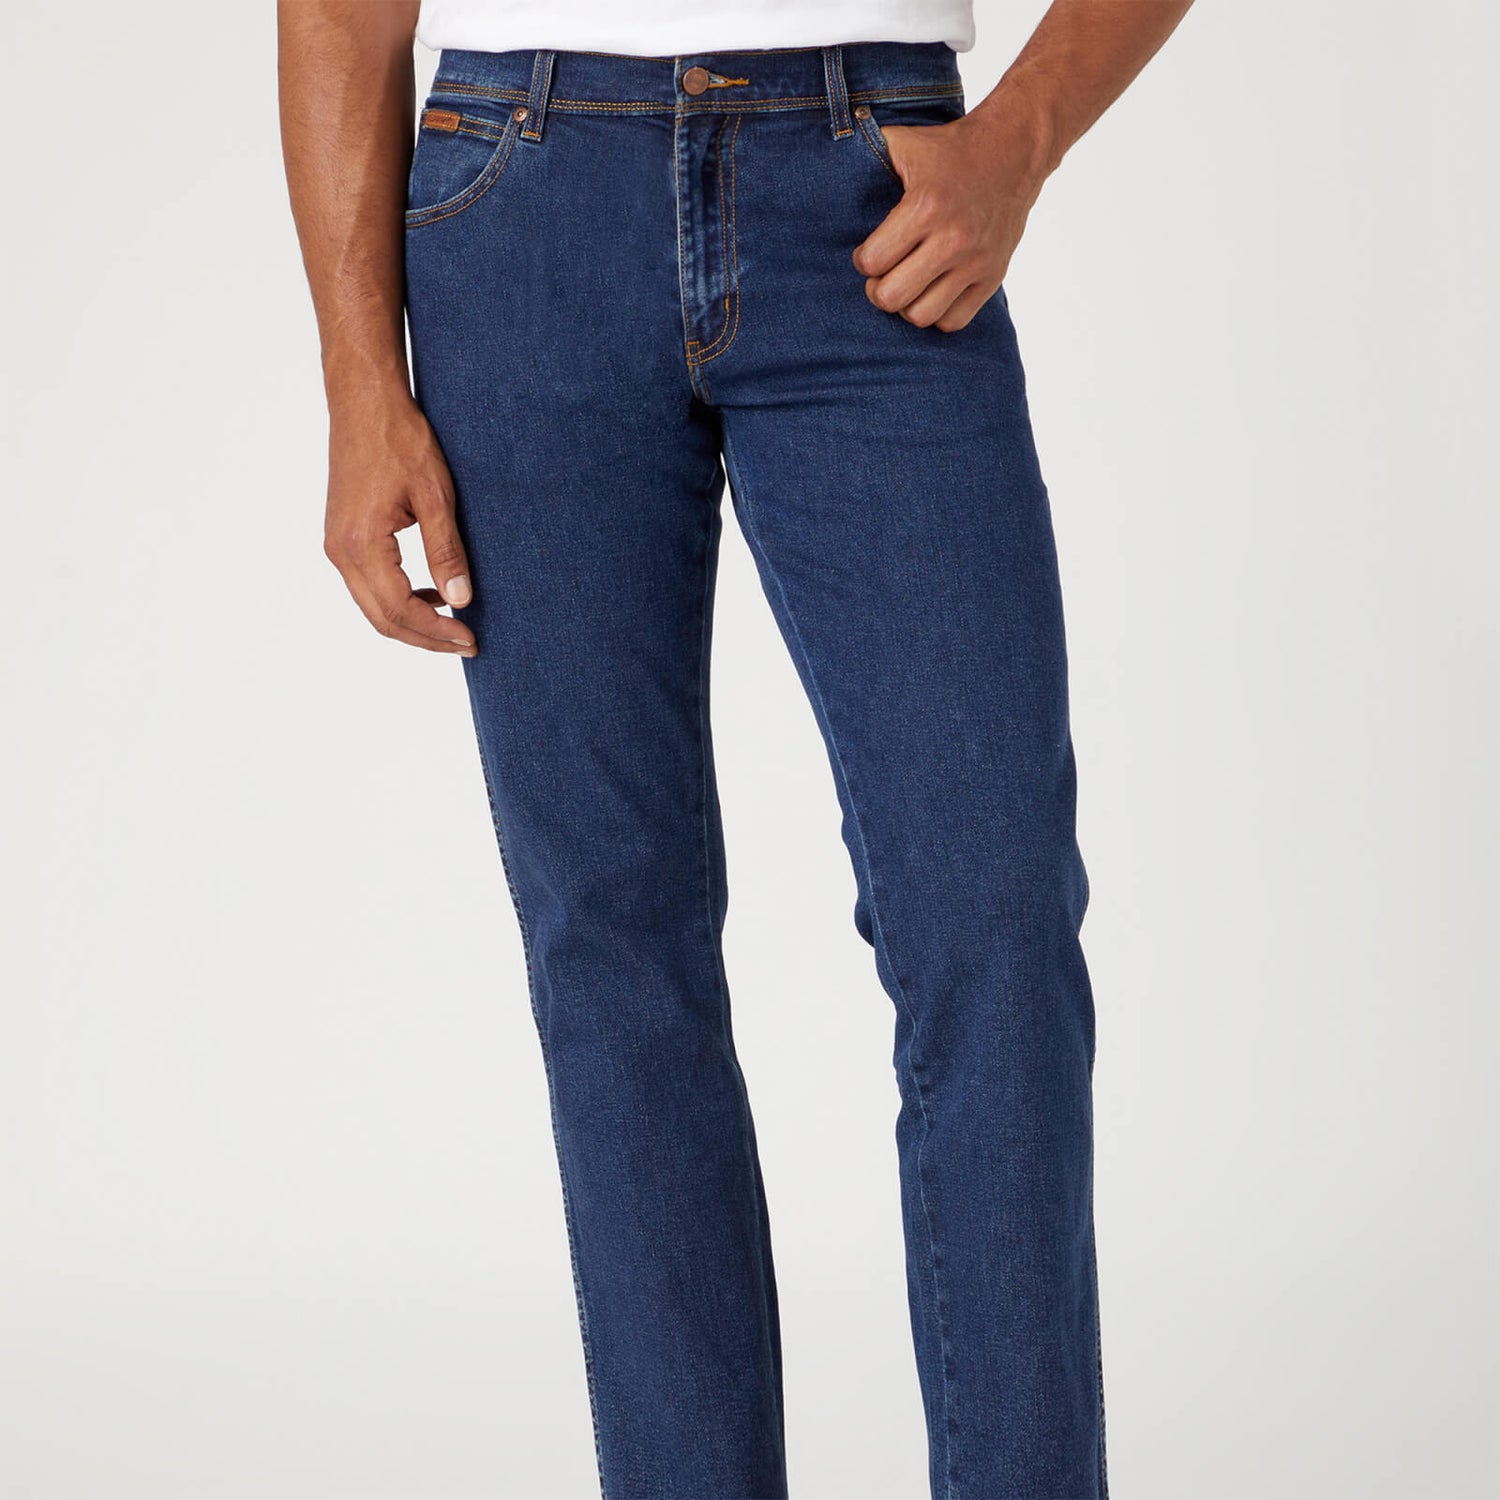 Wrangler Men's Texas Original Regular Straight Leg Jeans - Dark Stone - W30/L30